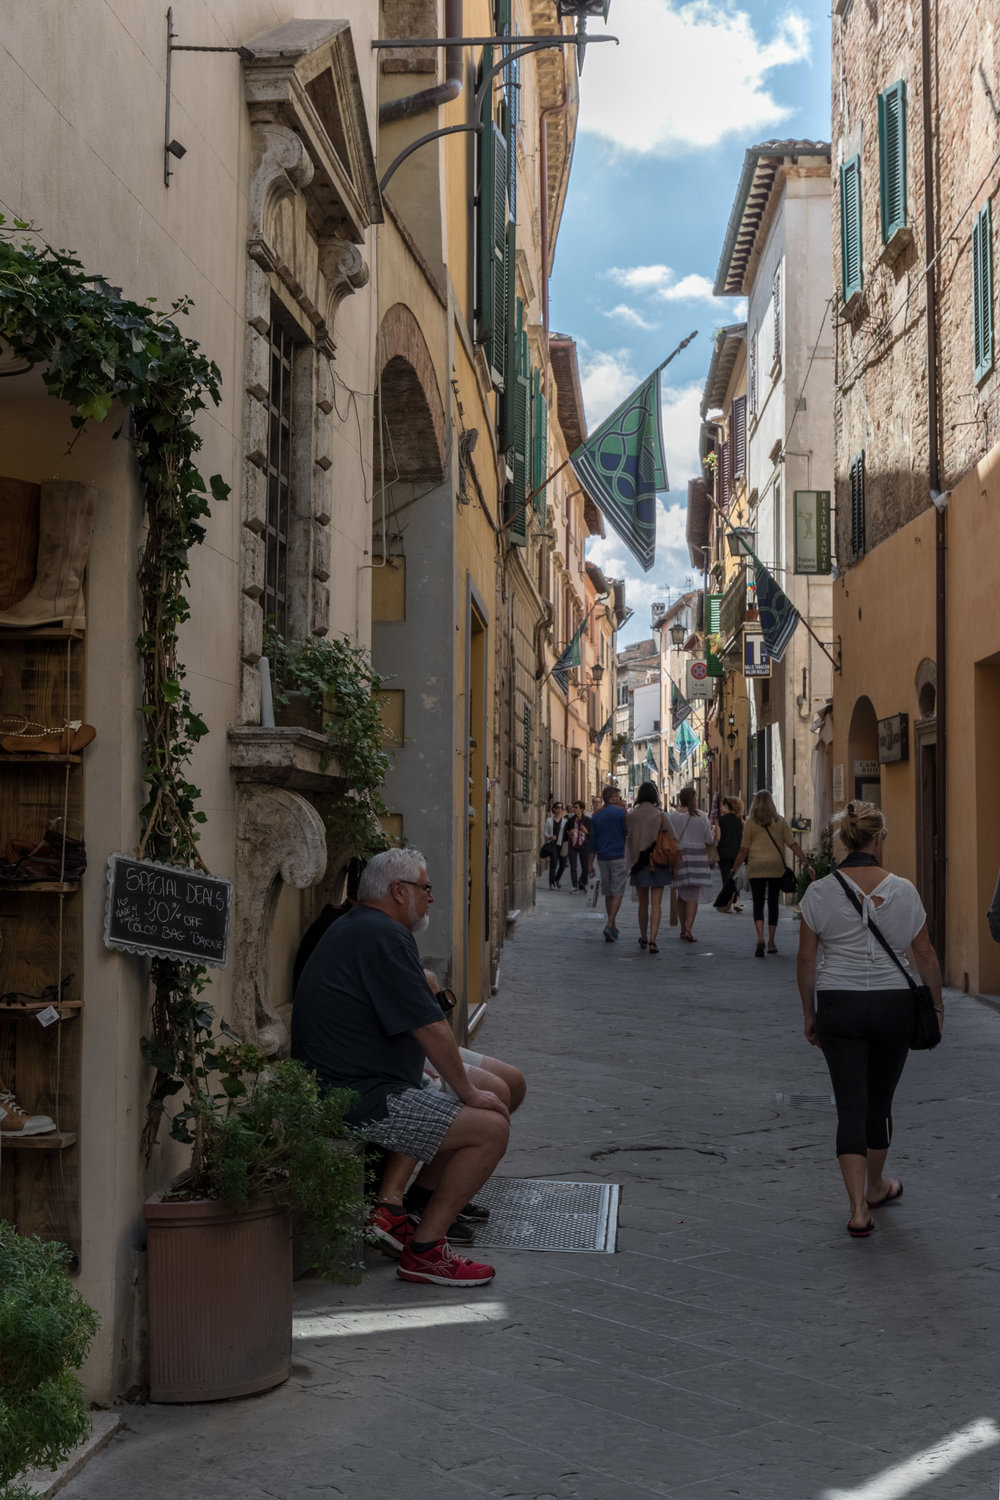 Montepulciano, Tuscany, Italy | Reid Burchell Photography